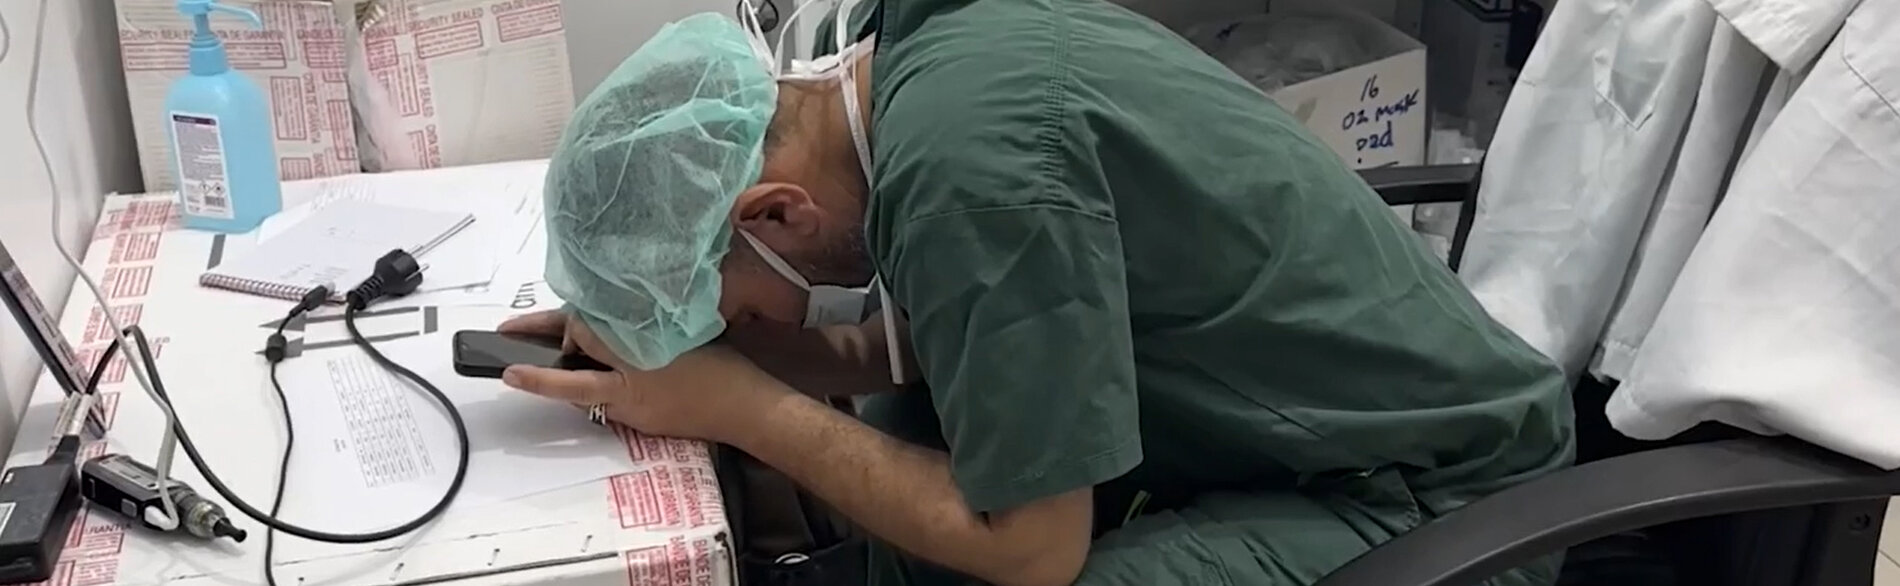 عامل طبي واضعا رأسه على يديه من شدة الإرهاق. تصوير منظمة أطباء بلا حدود